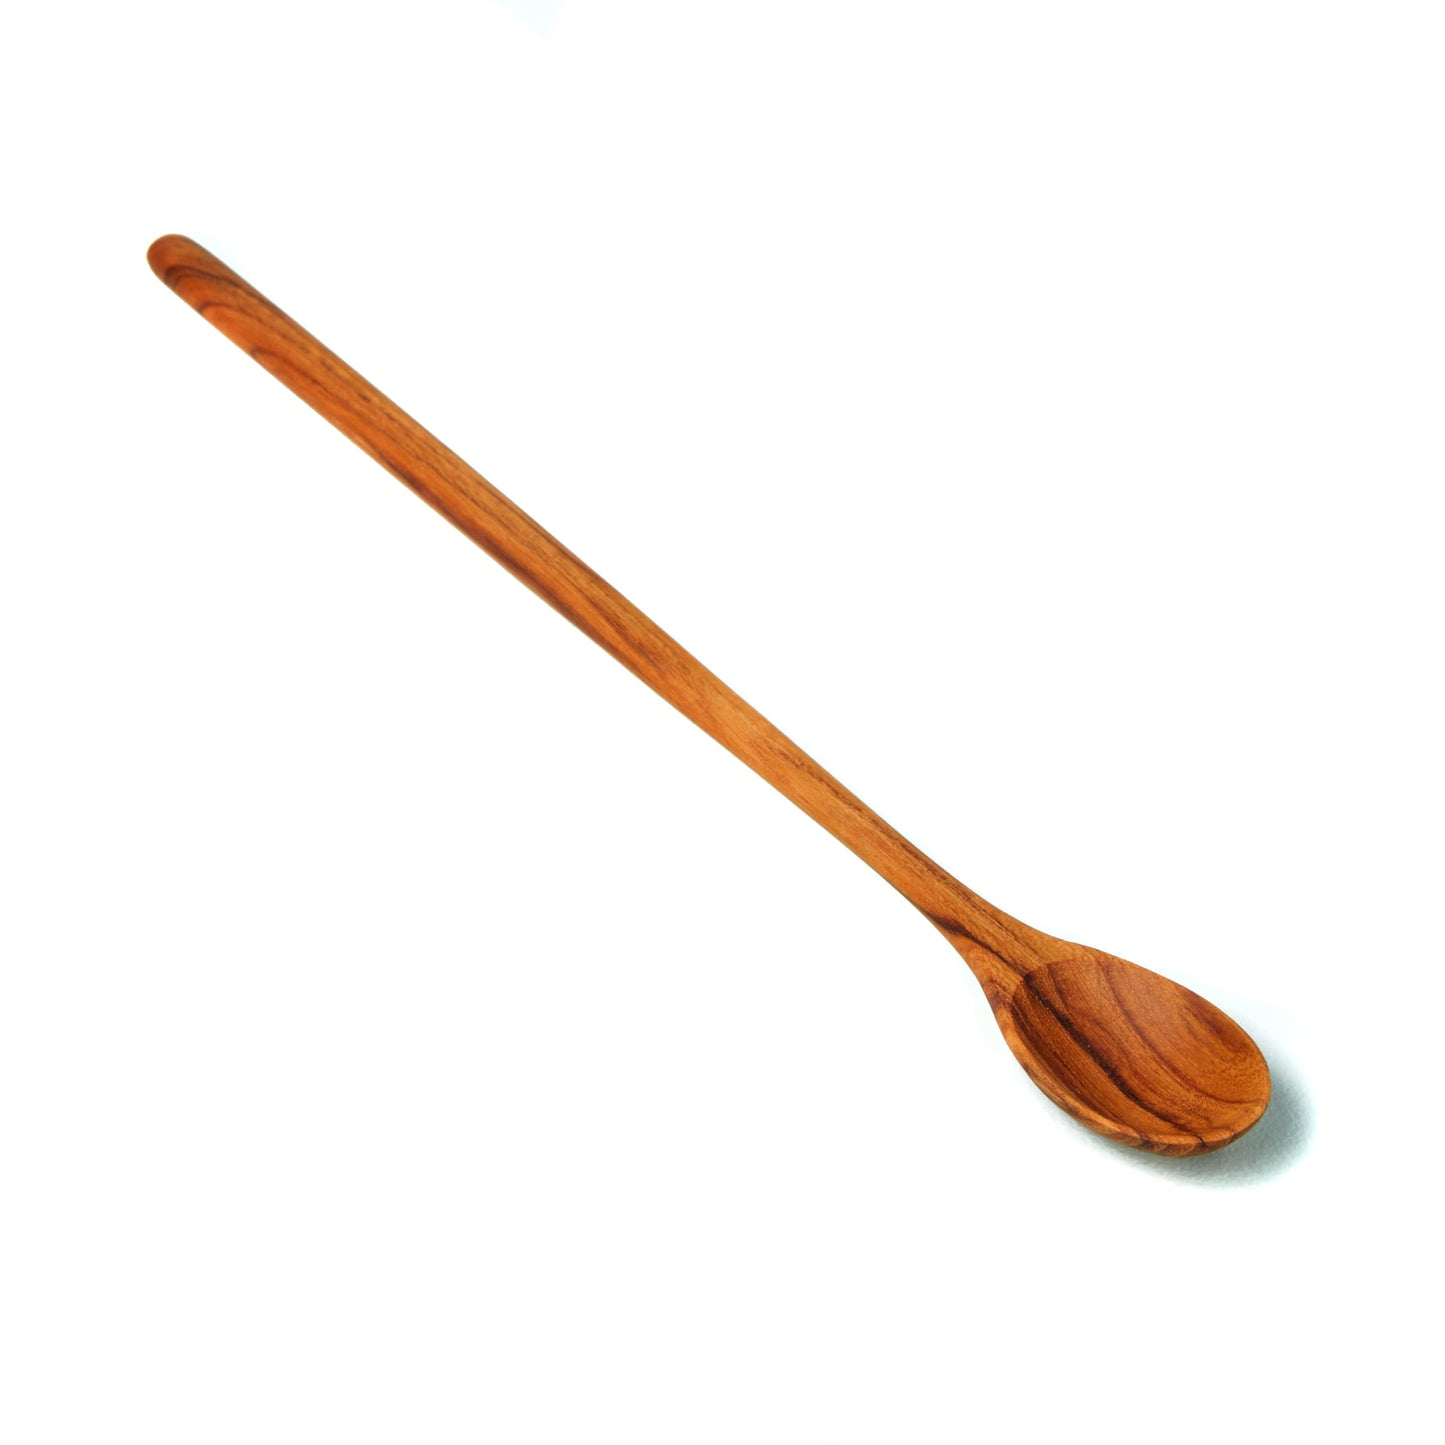 Teak Wood Long Bar or Tasting Spoon